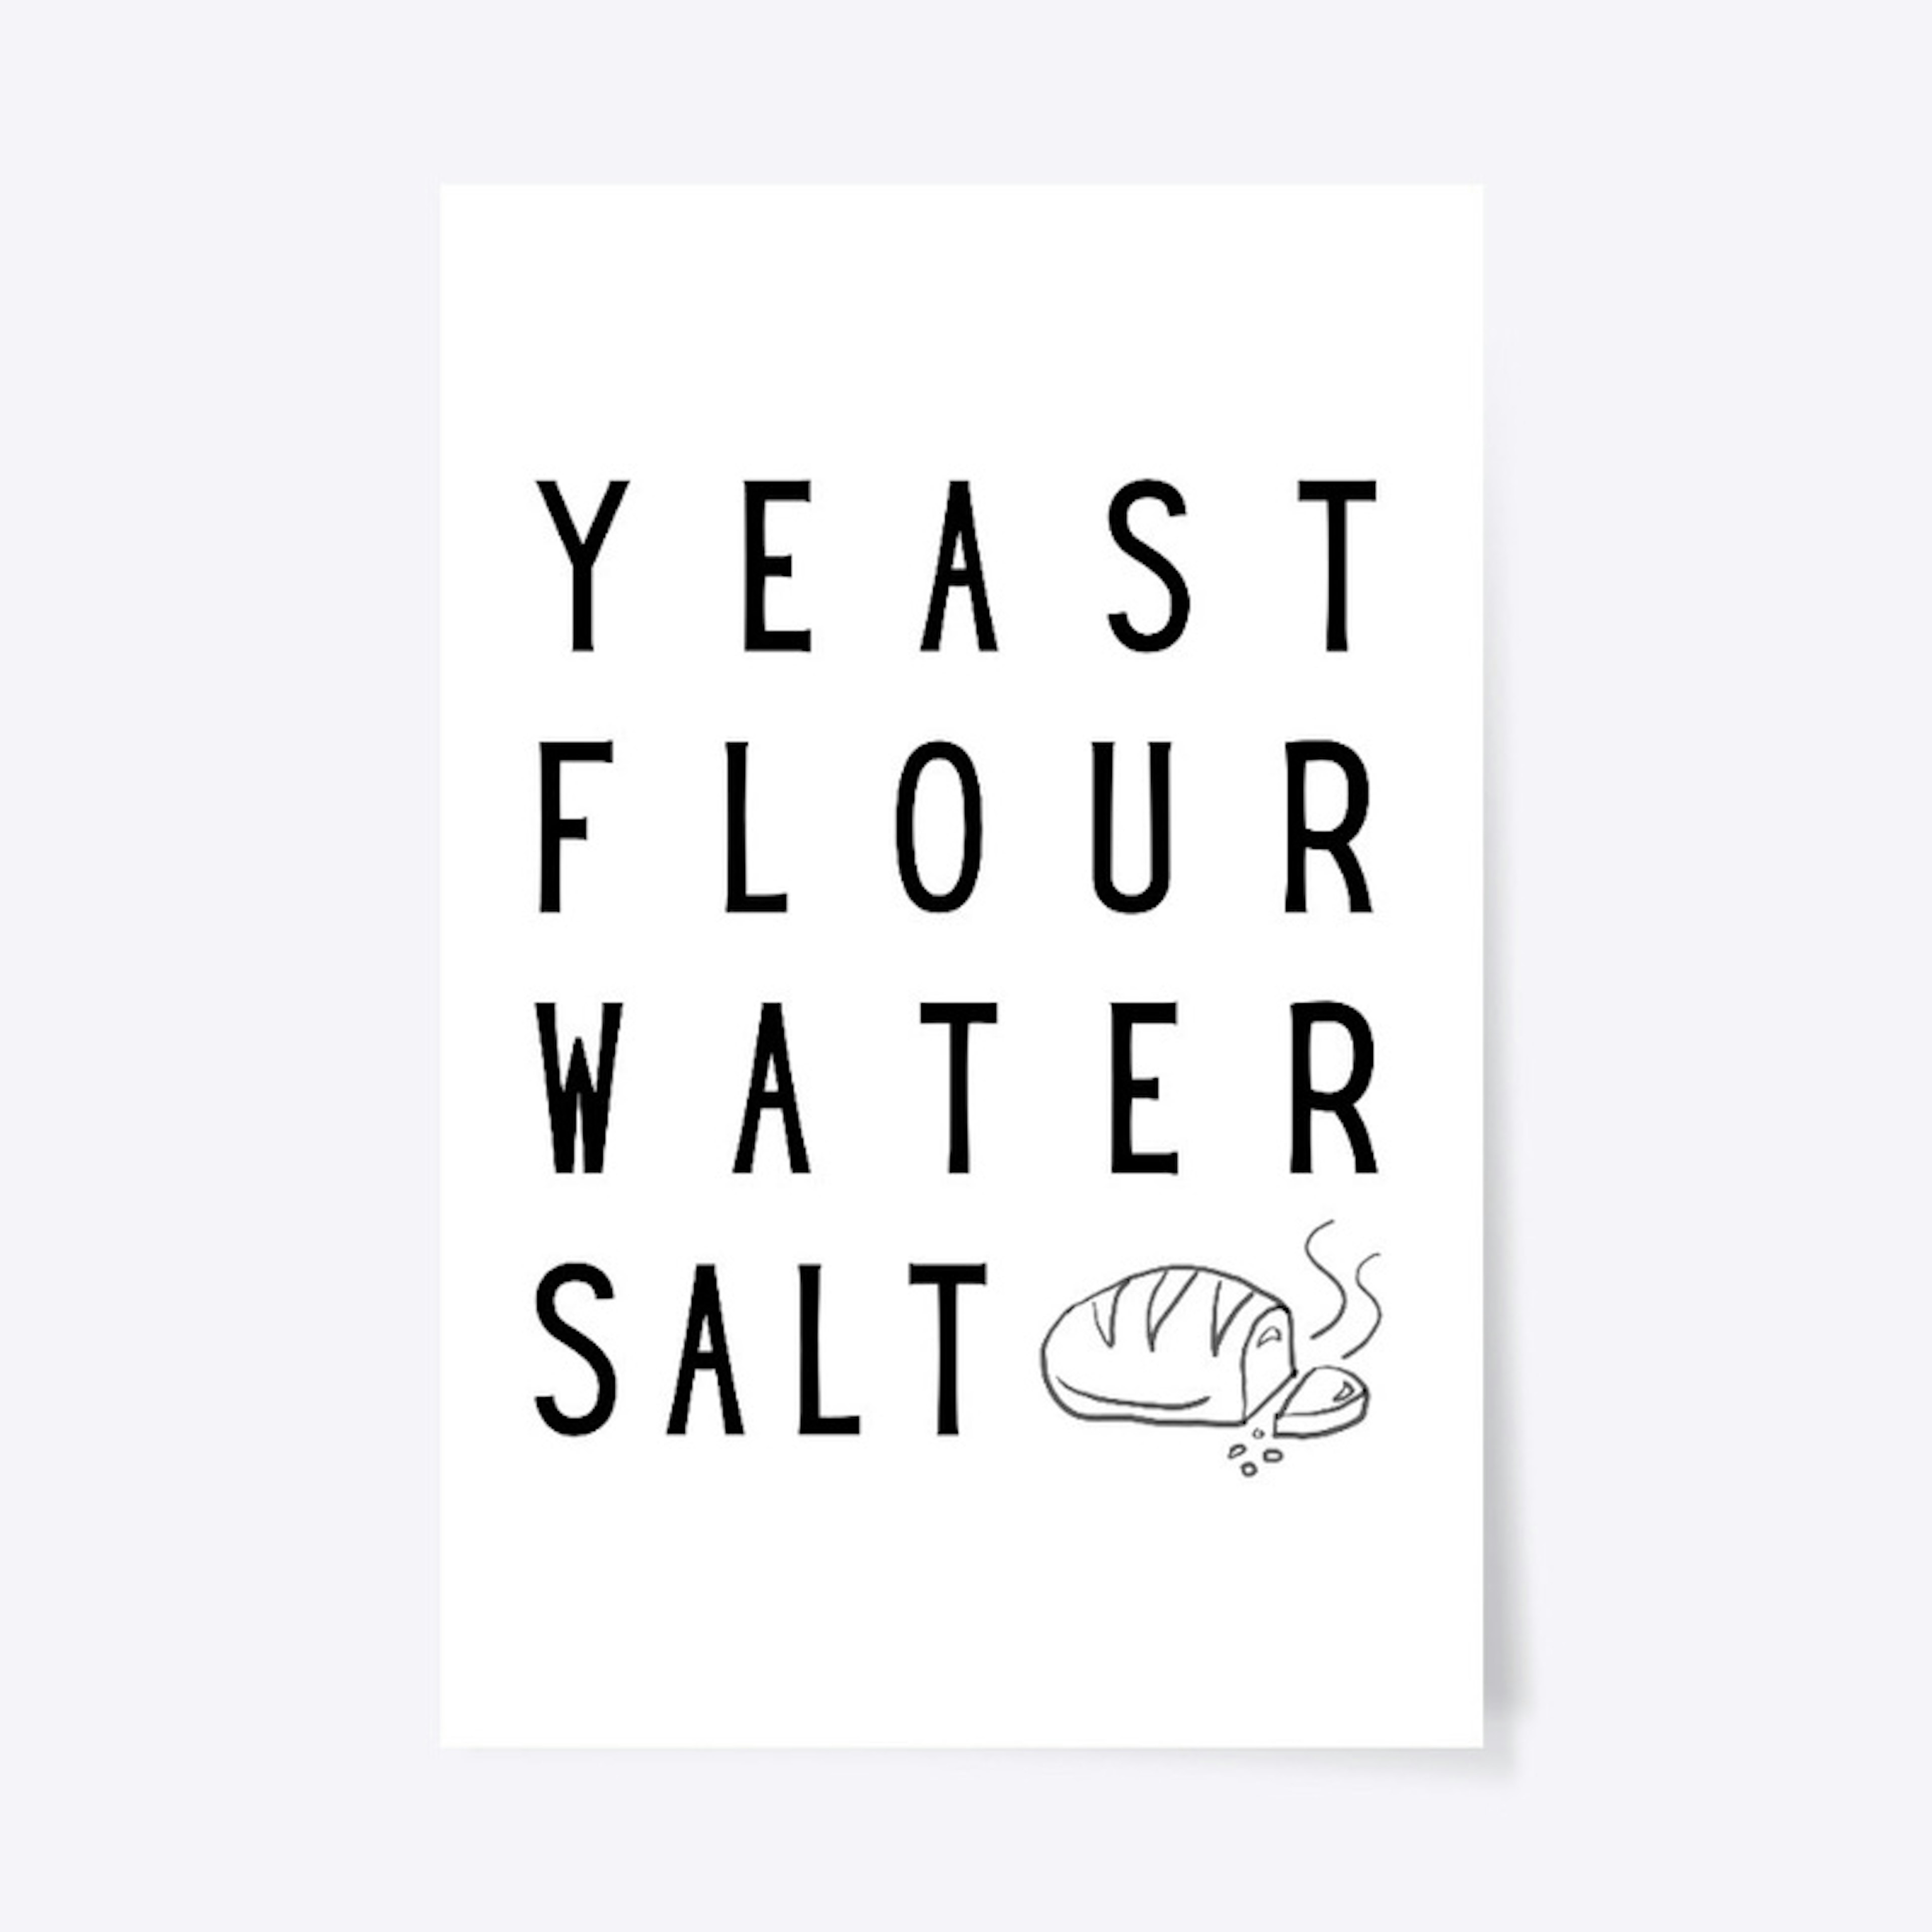 Yeast + Flour + Water + Salt = Bread